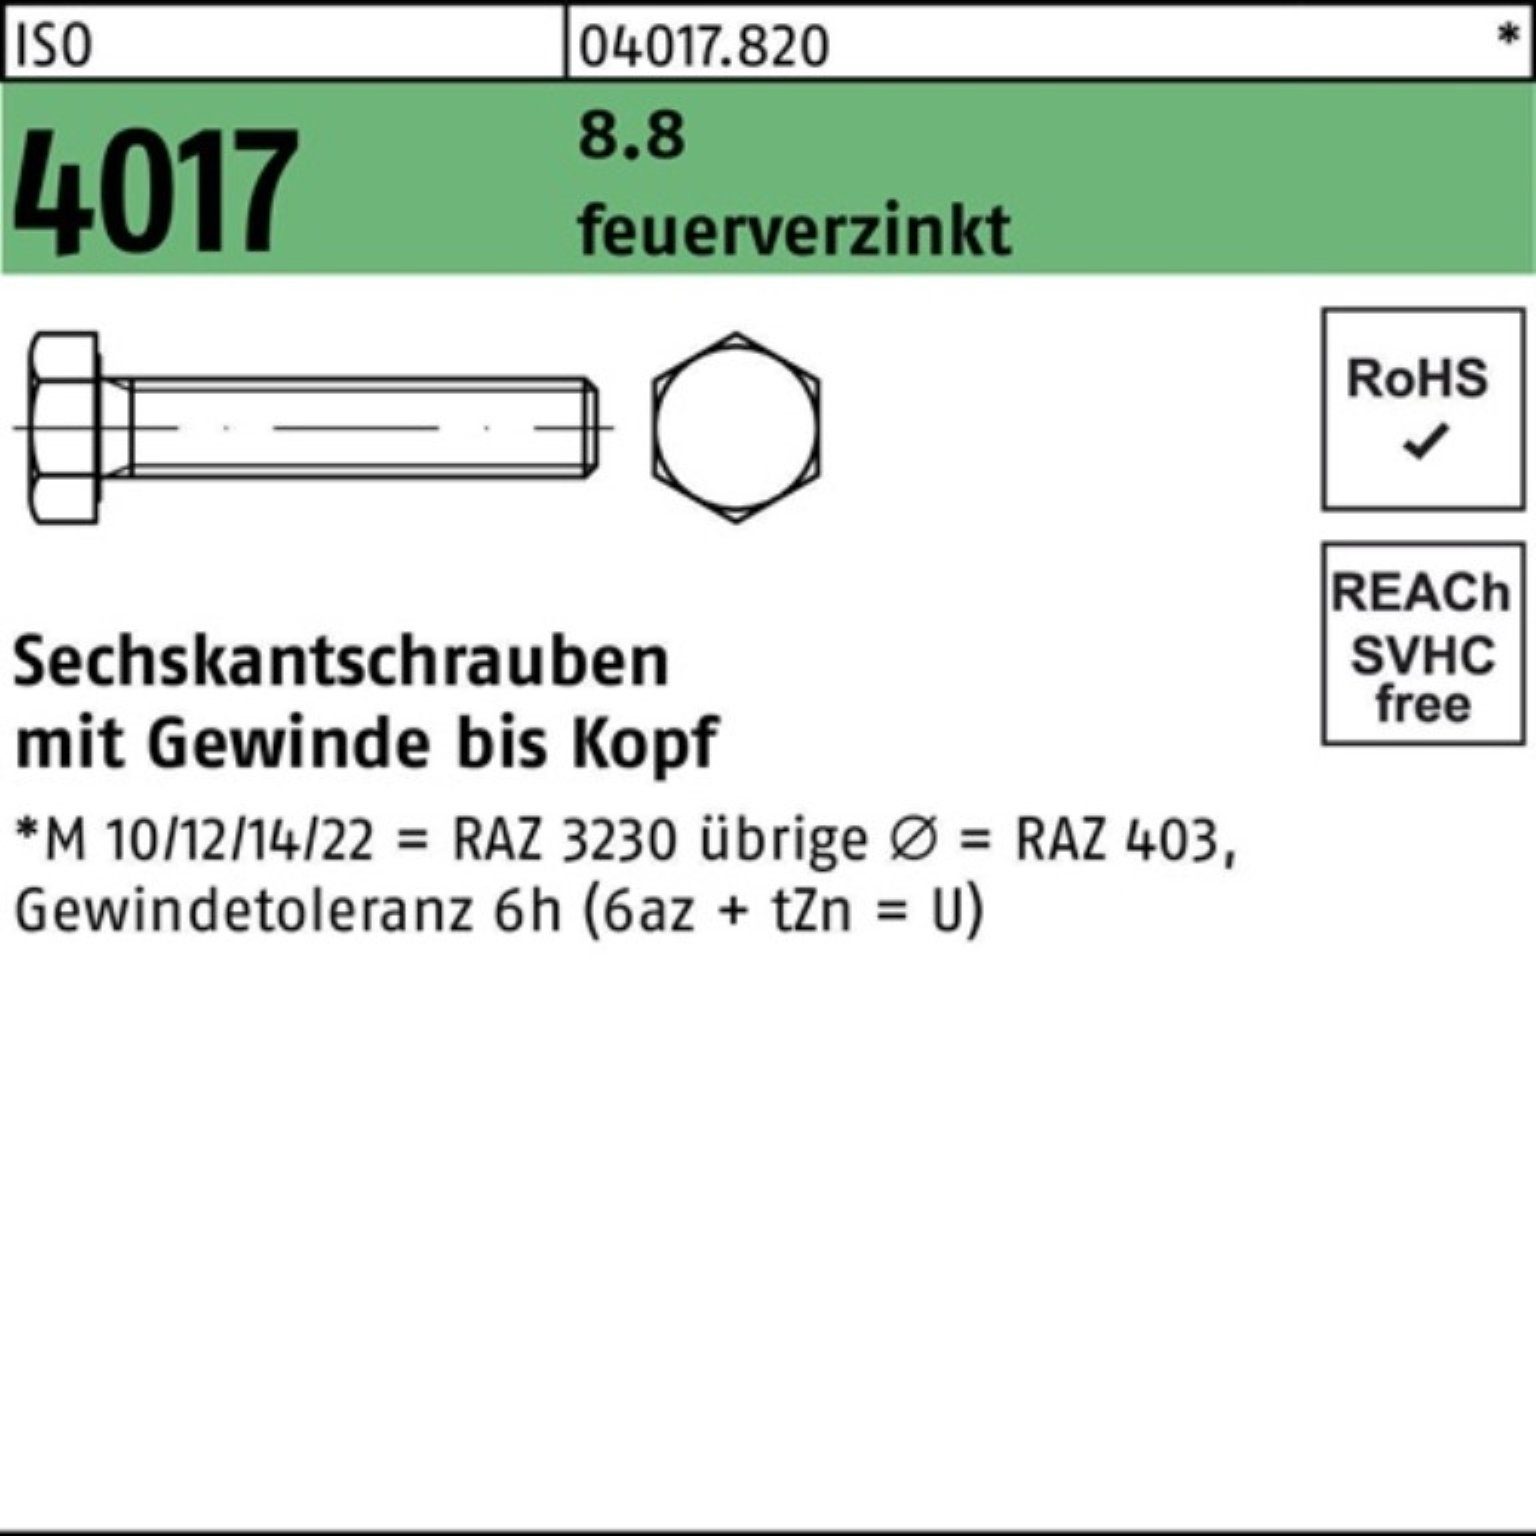 Bufab Sechskantschraube 100er Pack Sechskantschraube M8x ISO 90 VG St 4017 8.8 feuerverz. 100